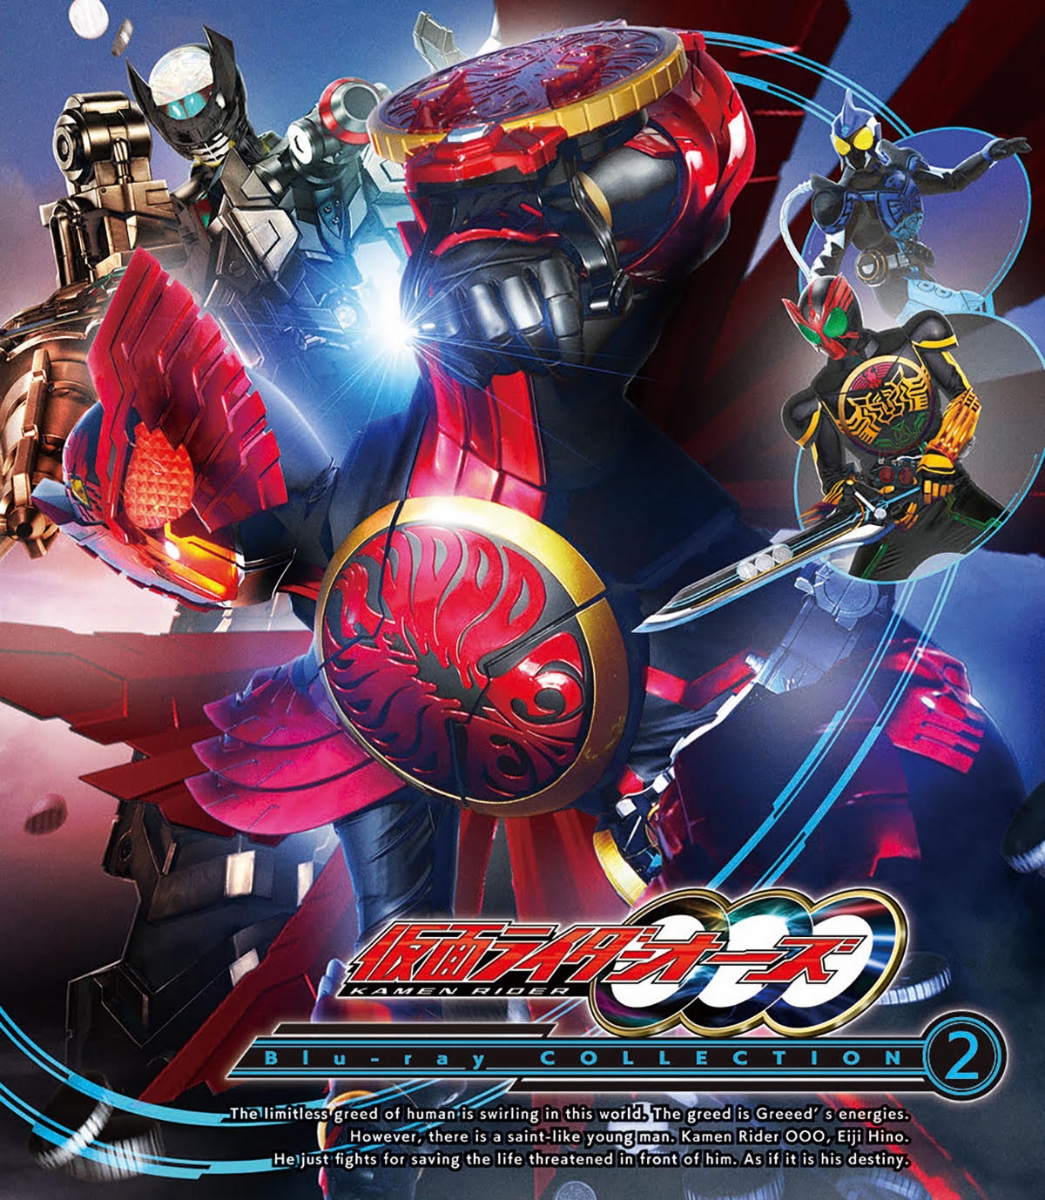 仮面ライダーOOO(オーズ) Blu-ray COLLECTION 2【Blu-ray】 [ 渡部秀 ]画像